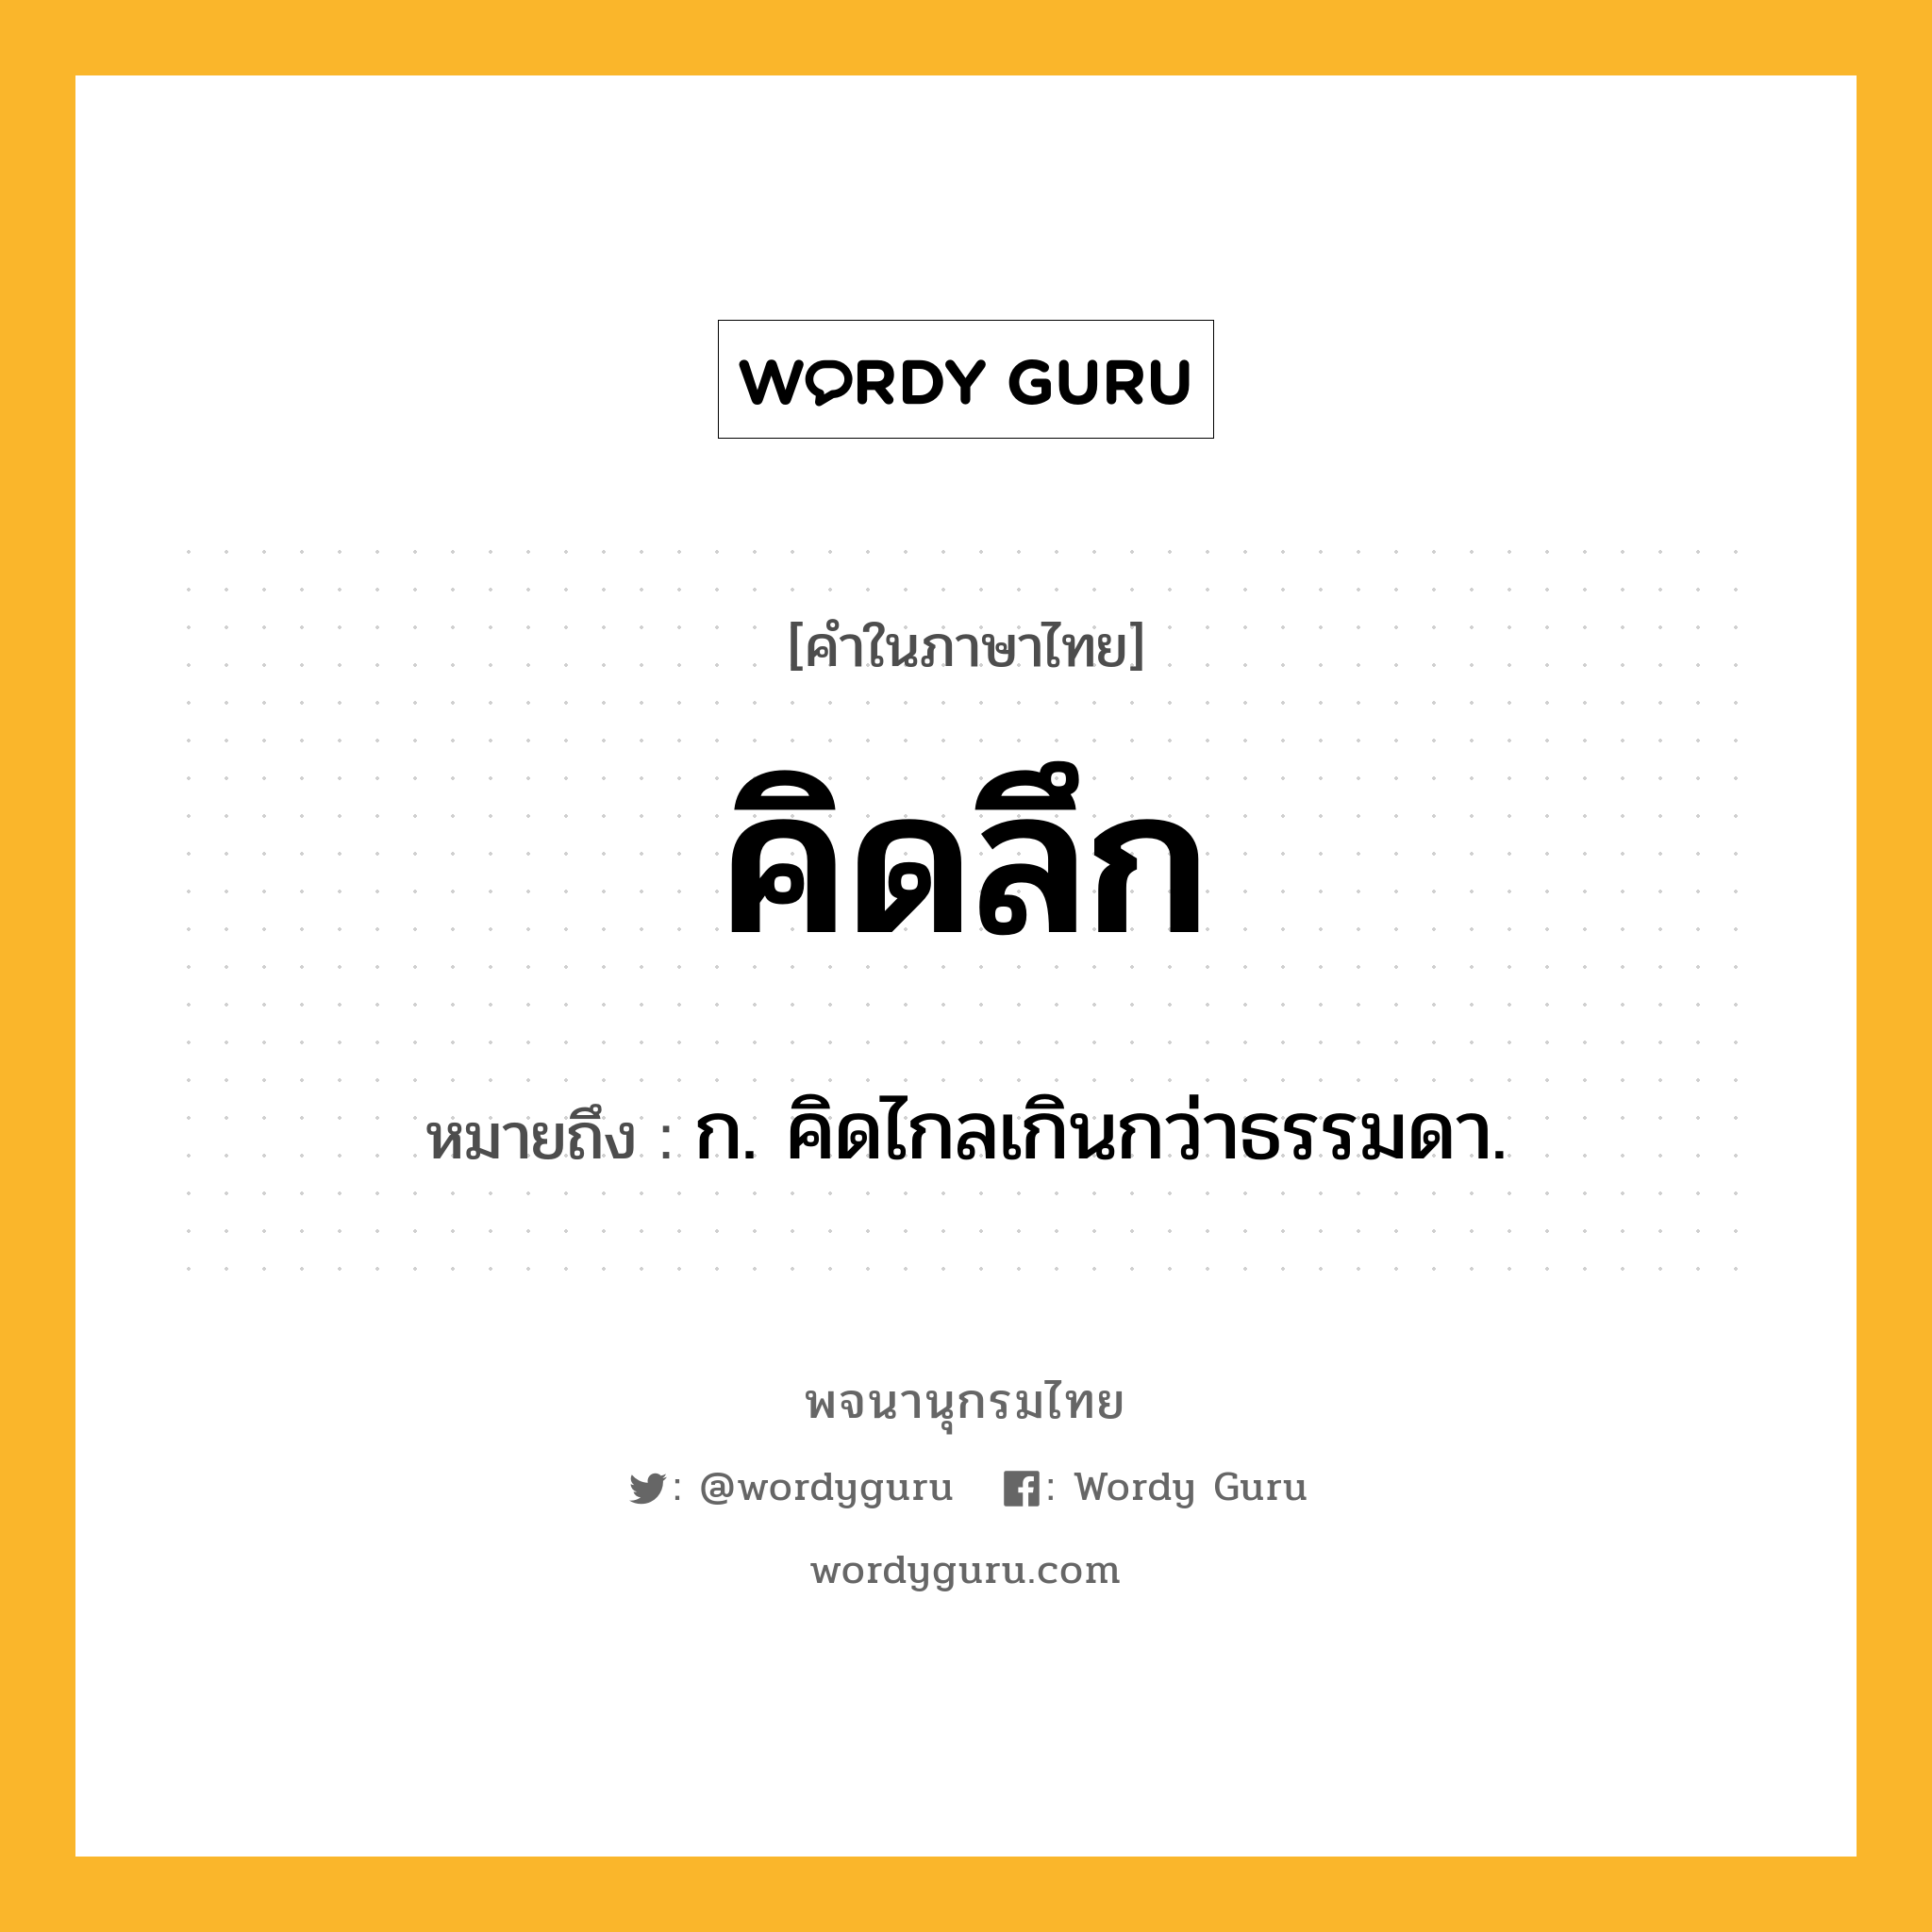 คิดลึก ความหมาย หมายถึงอะไร?, คำในภาษาไทย คิดลึก หมายถึง ก. คิดไกลเกินกว่าธรรมดา.